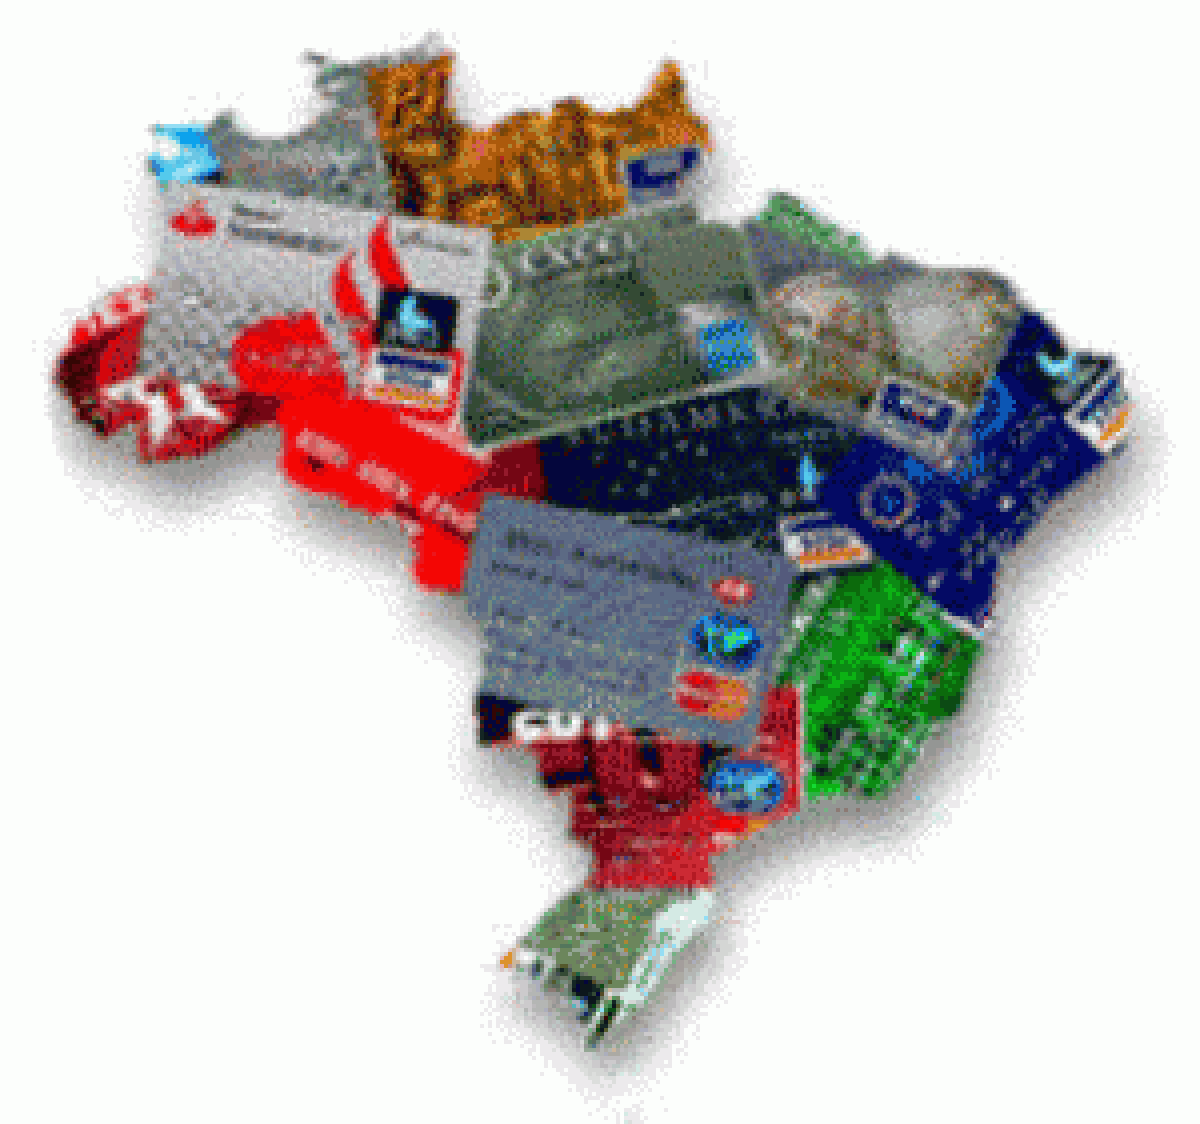 Cartão de crédito no Brasil bate soma dos juros cobrados em 6 países da AL